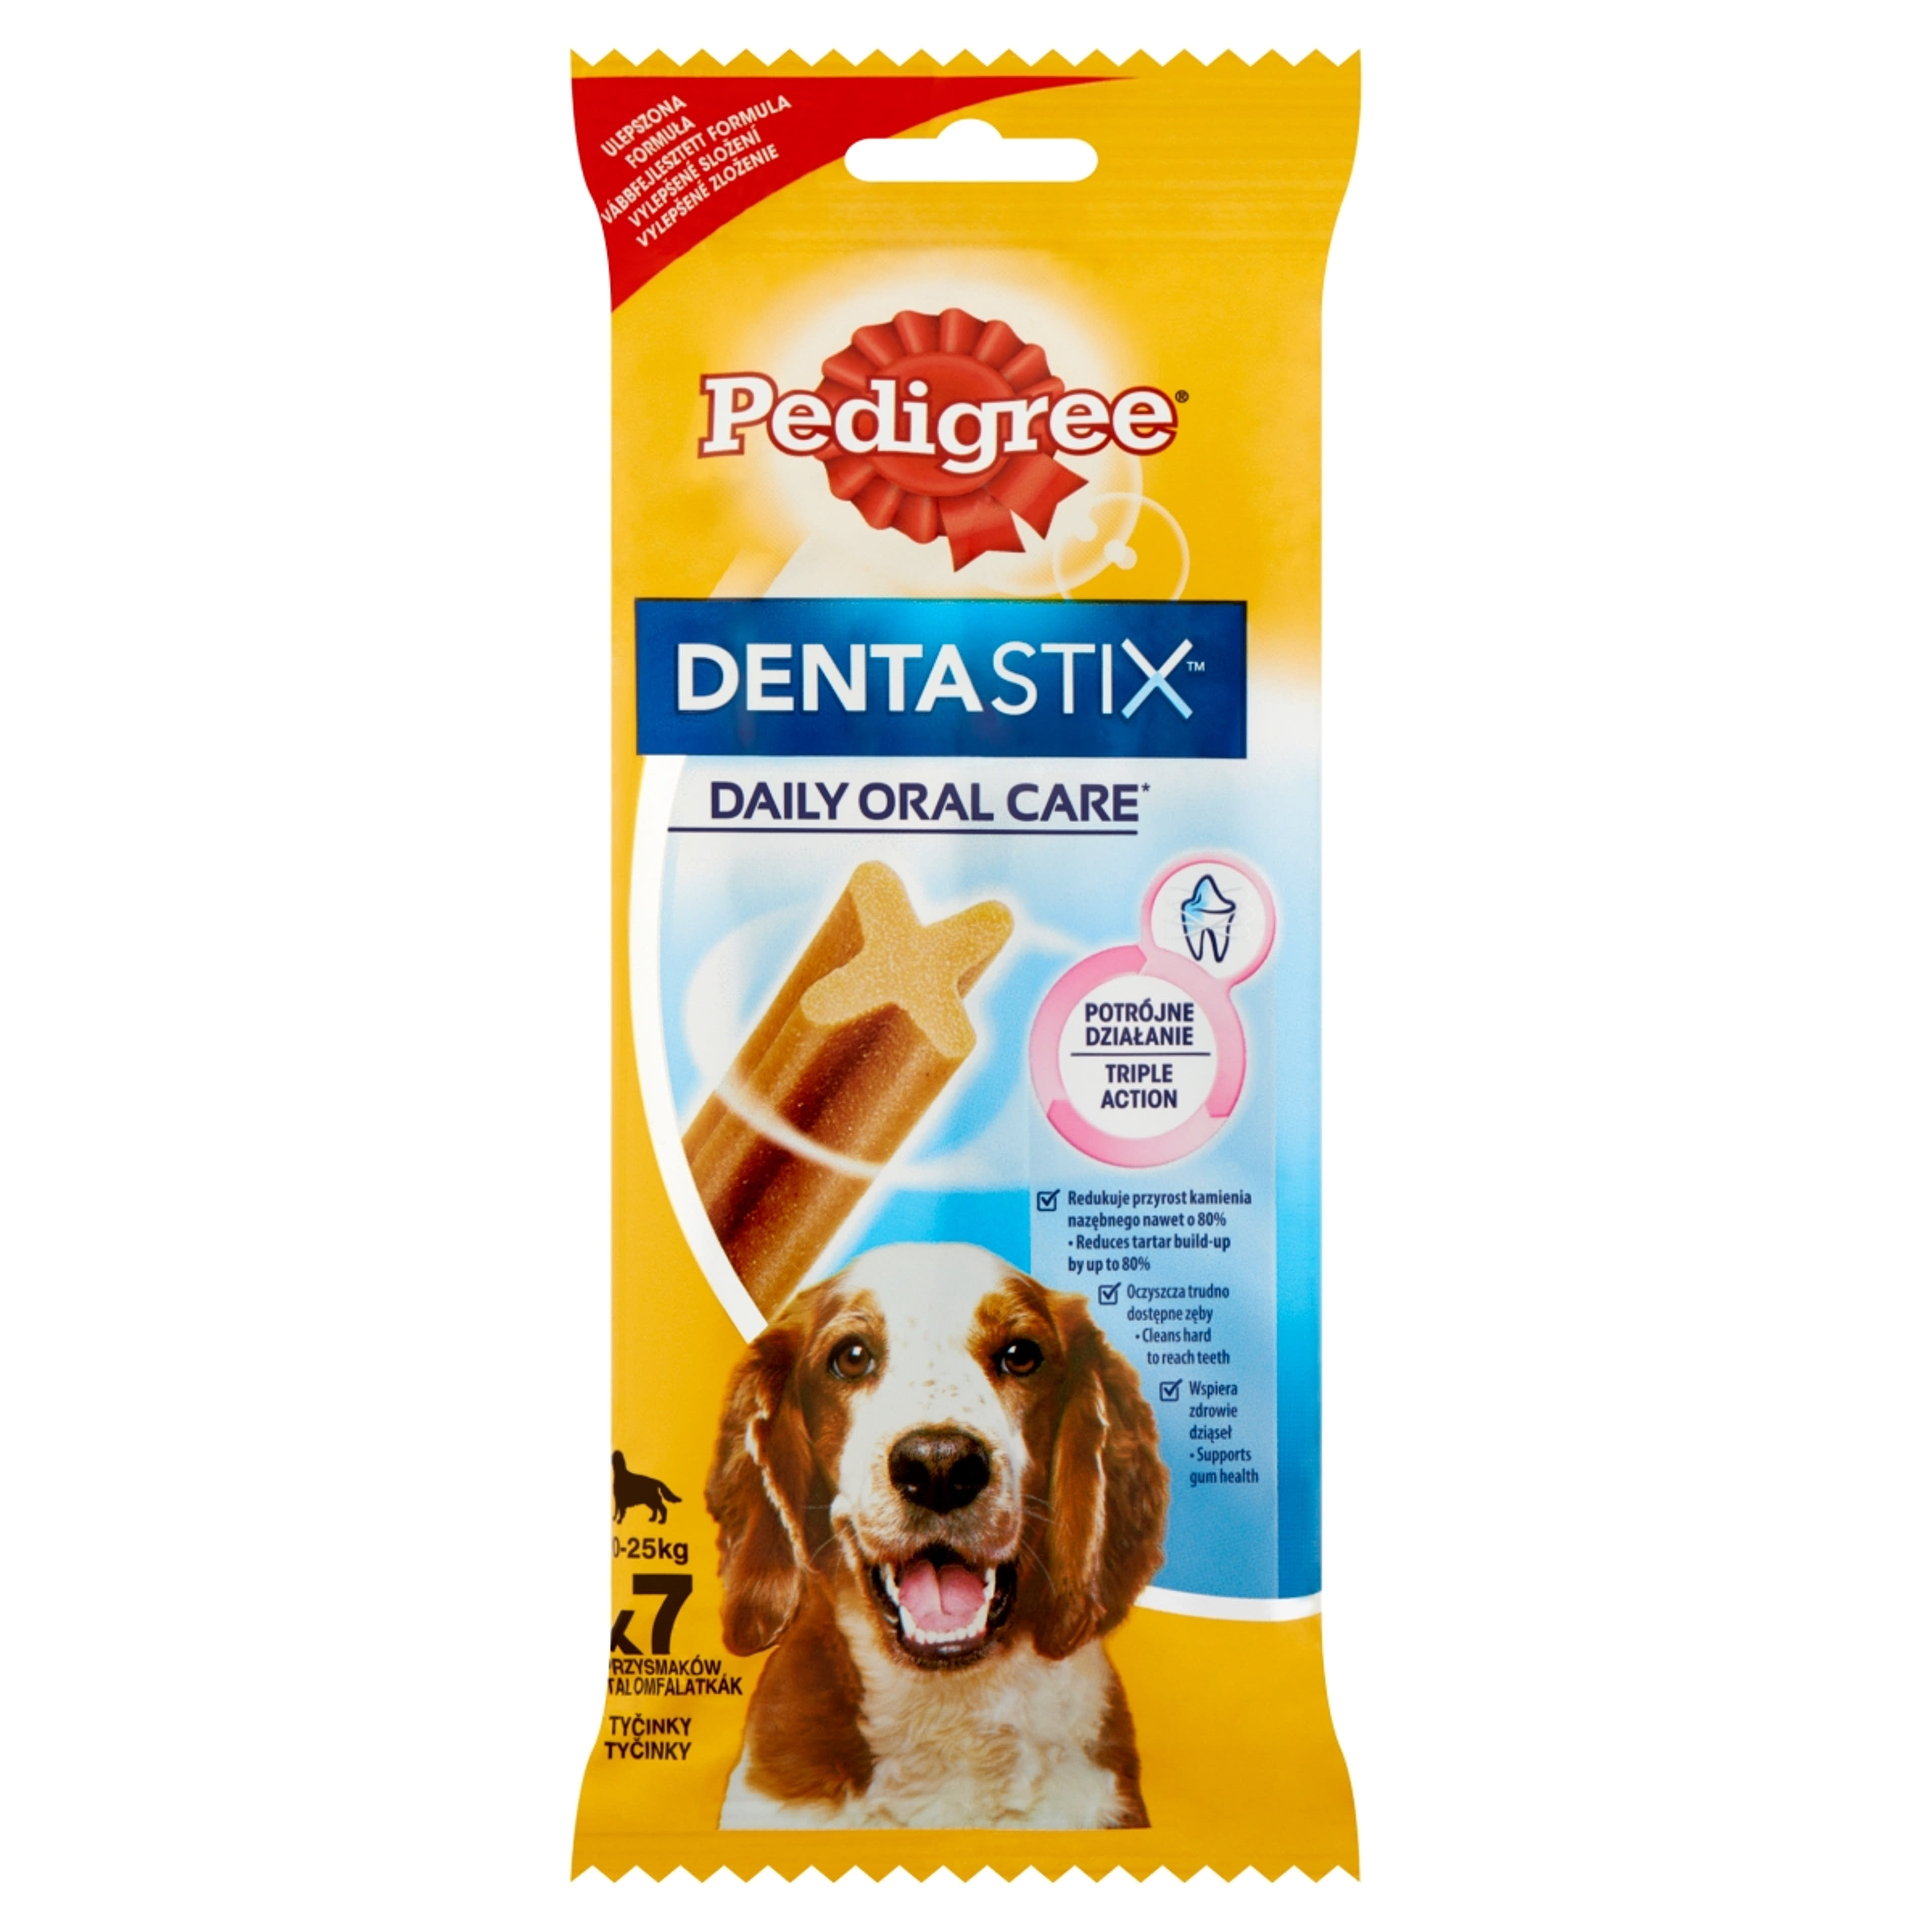 Pedigree DentaStix 4 hónapnál idősebb kiegészítő szárazeledel kutyáknak, 7 db - 180 g